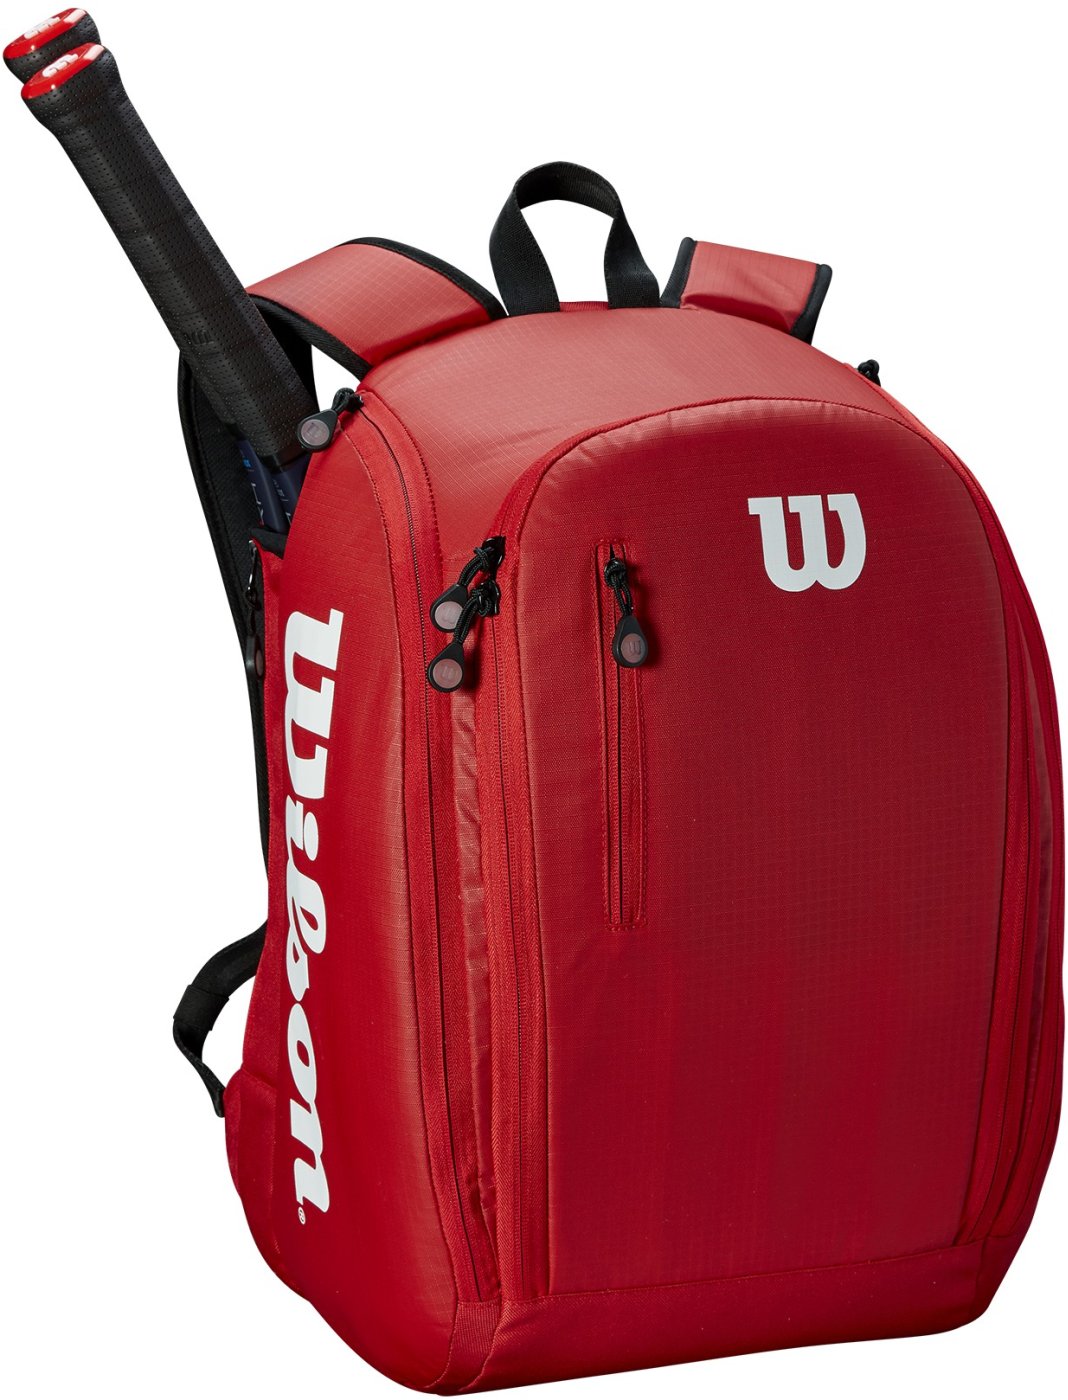 Tennis backpack